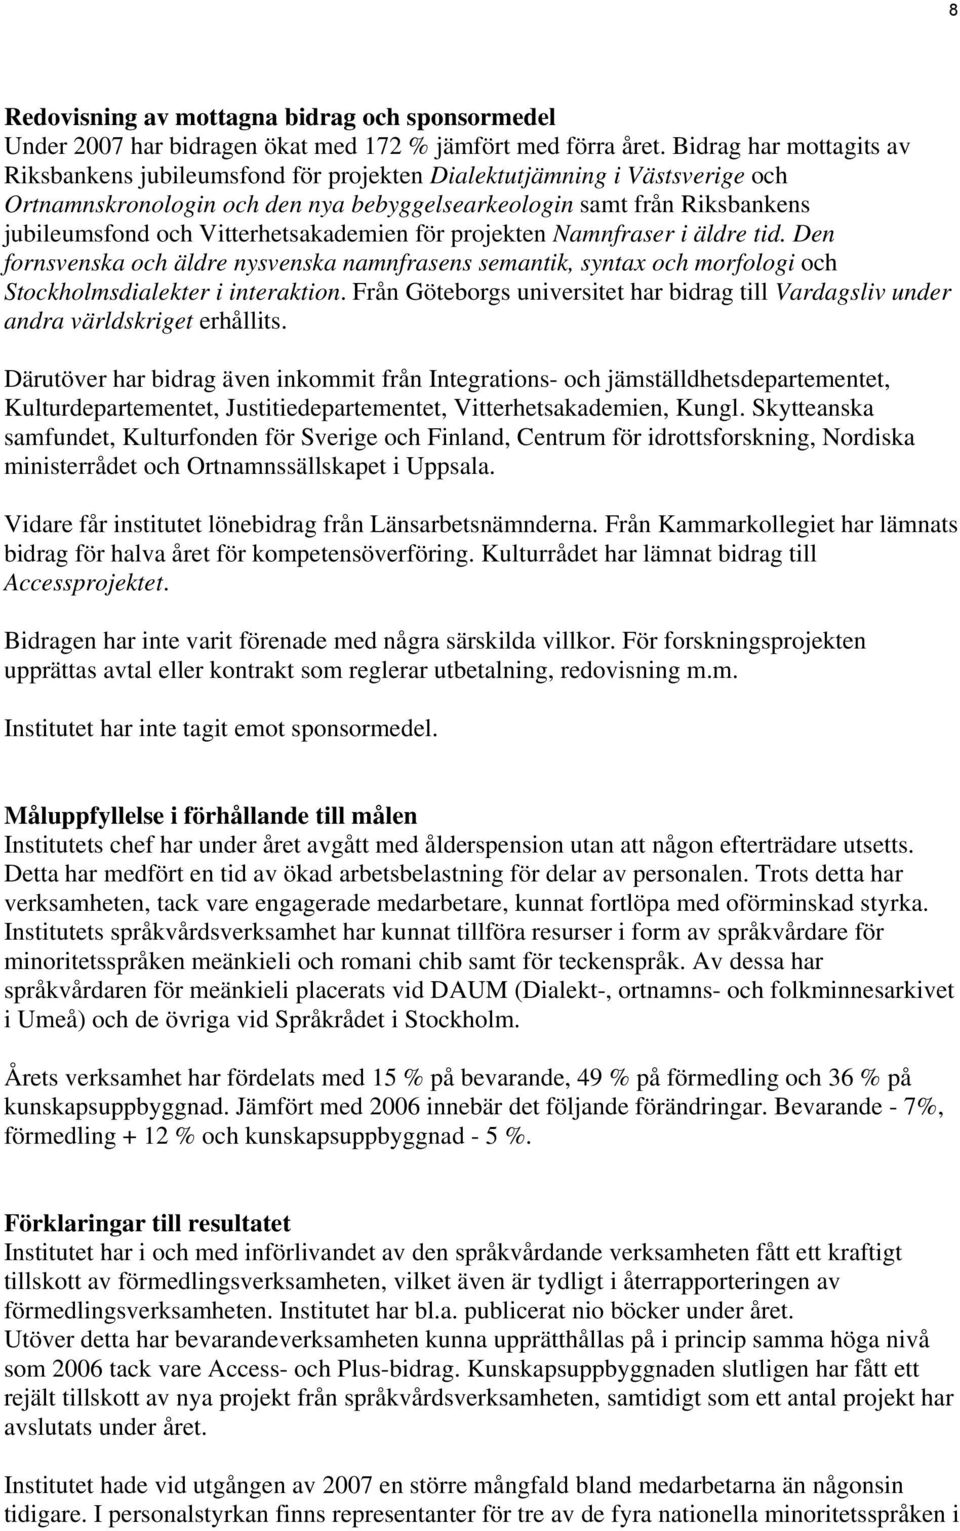 Vitterhetsakademien för projekten Namnfraser i äldre tid. Den fornsvenska och äldre nysvenska namnfrasens semantik, syntax och morfologi och Stockholmsdialekter i interaktion.